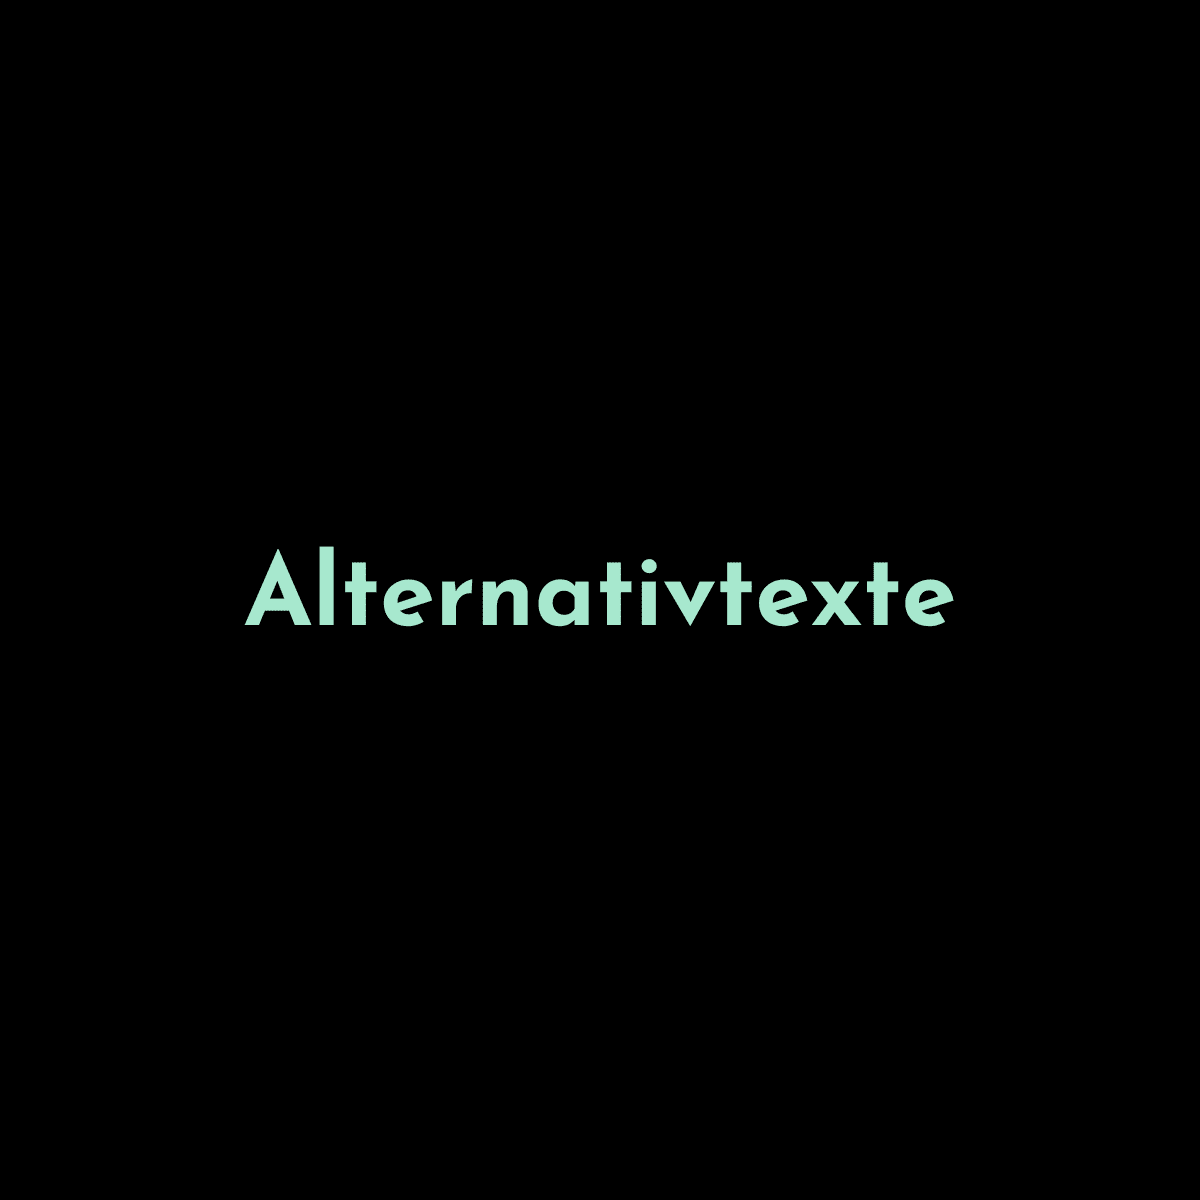 Bild zeigt Text: "Alternativtexte"